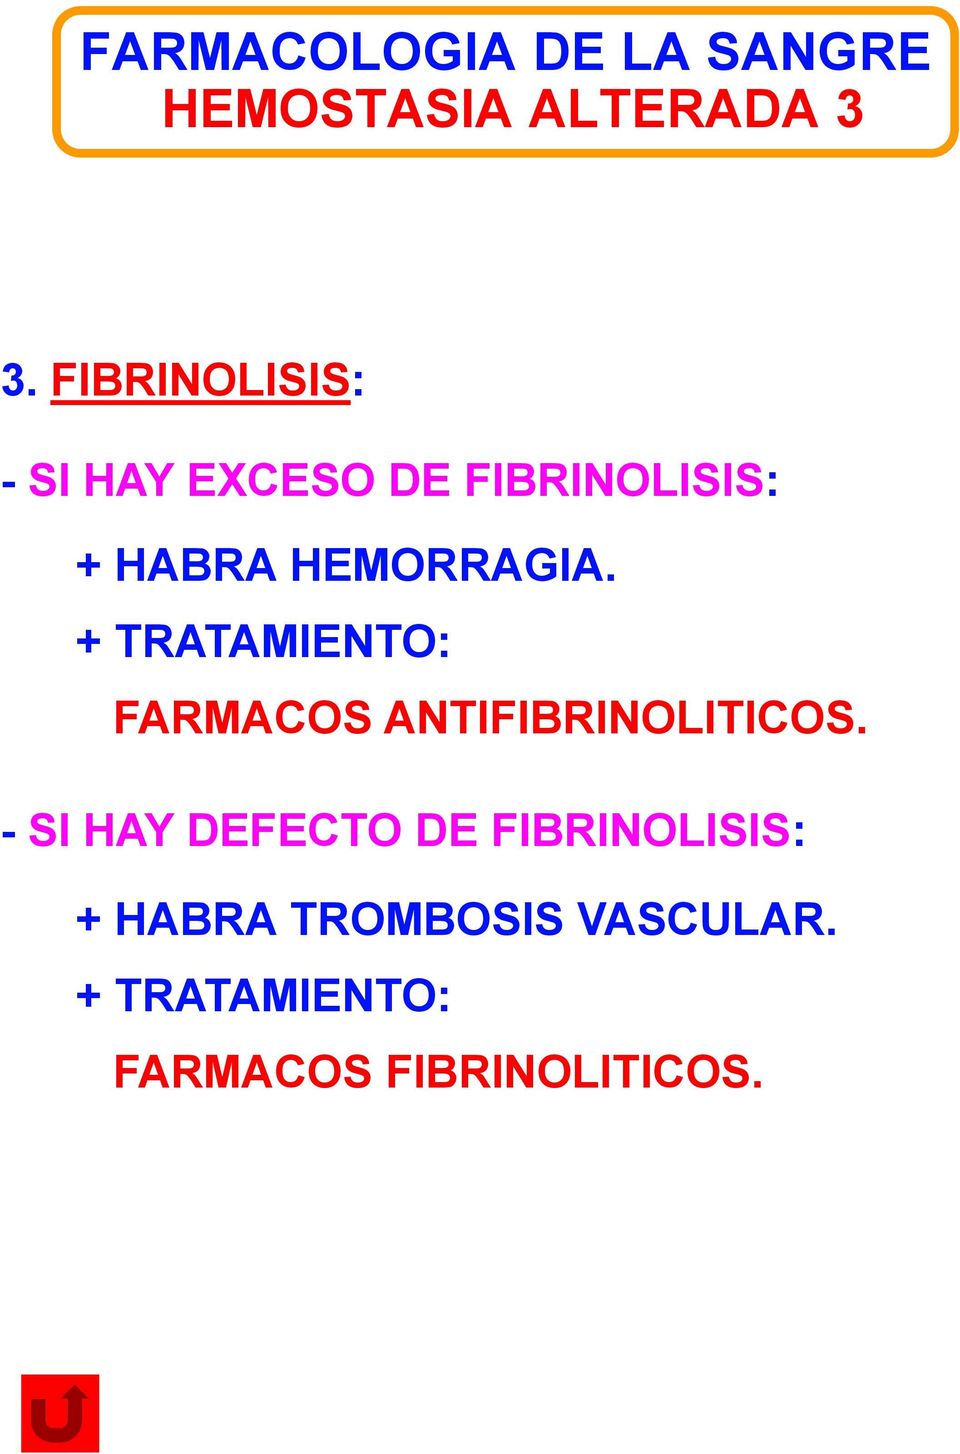 + TRATAMIENTO: FARMACOS ANTIFIBRINOLITICOS.